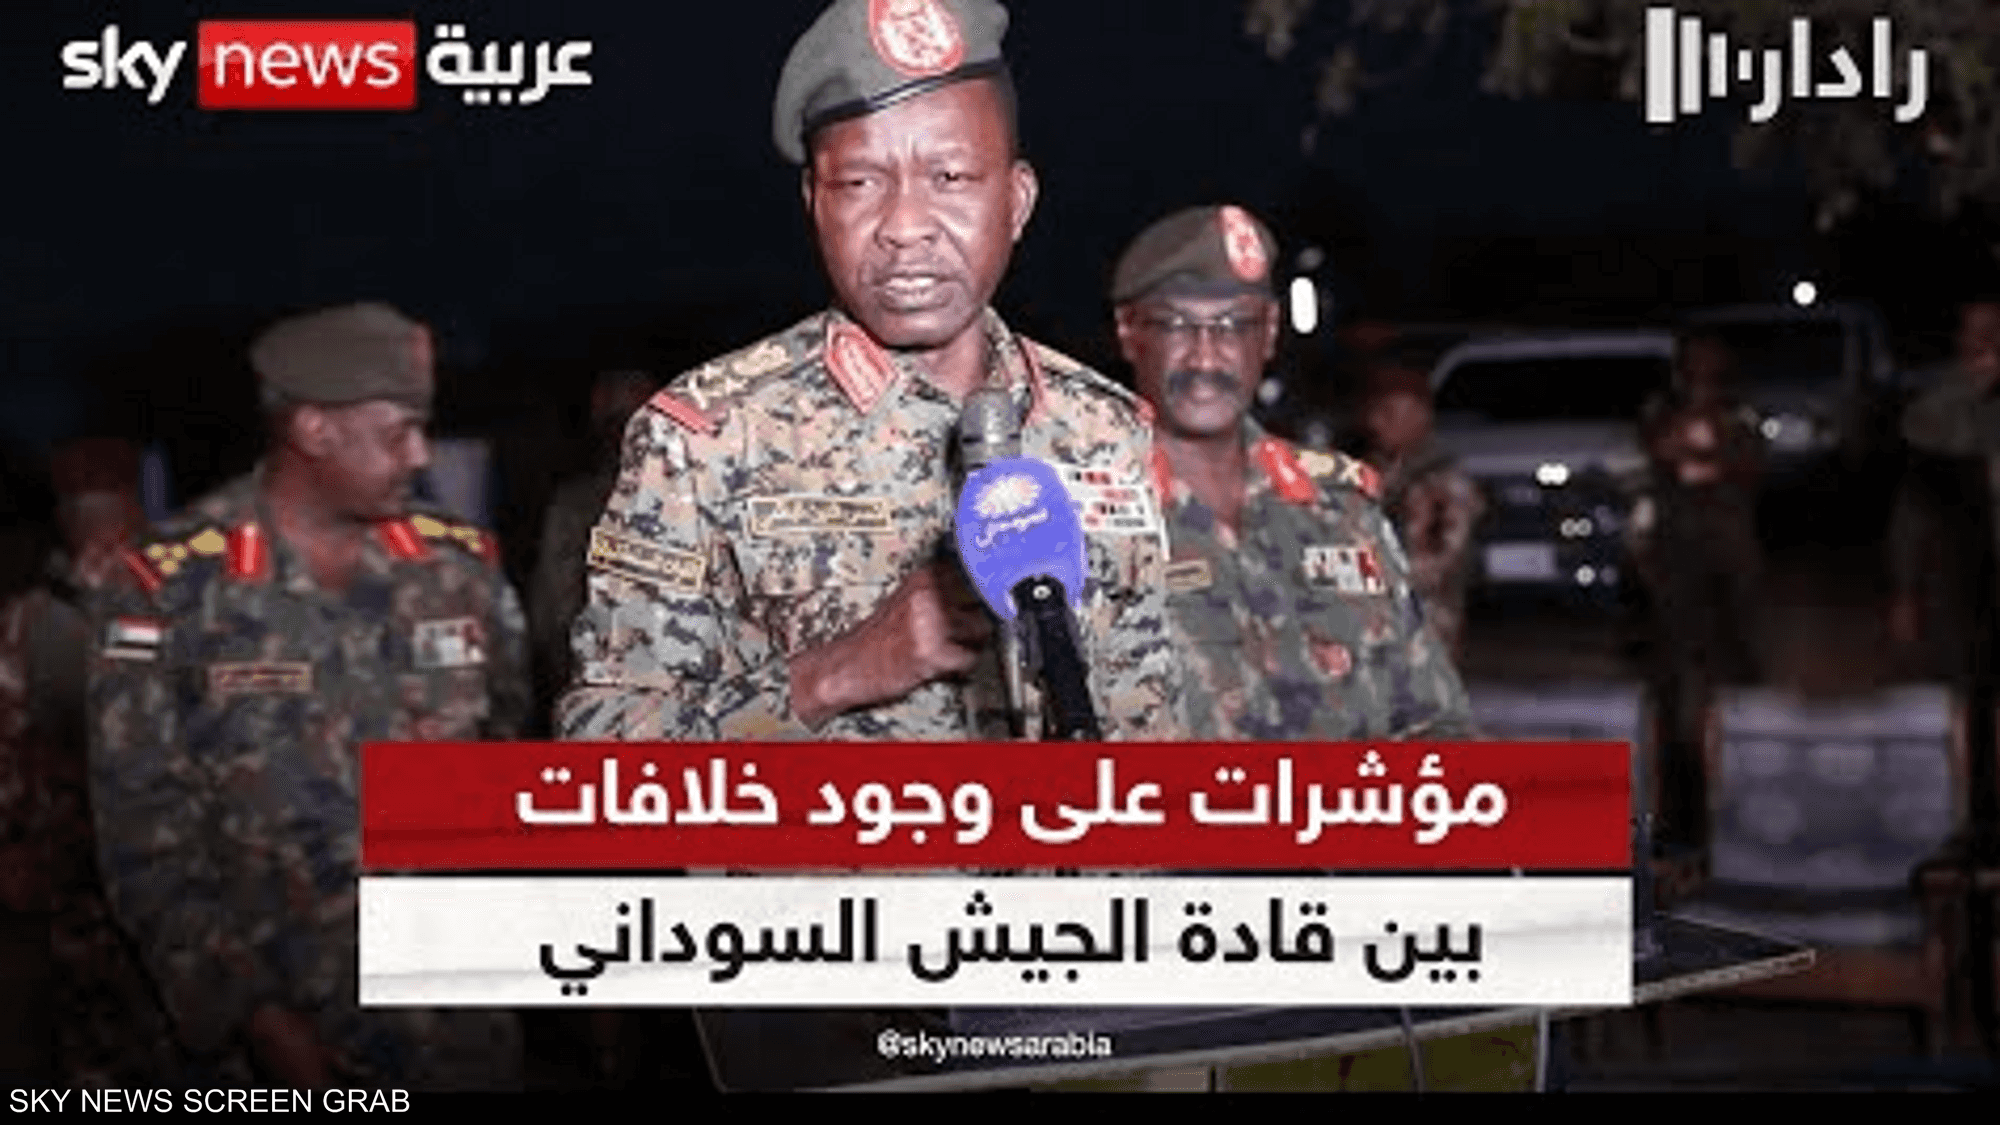 مؤشرات متواصلة على وجود خلافات بين قادة الجيش السوداني